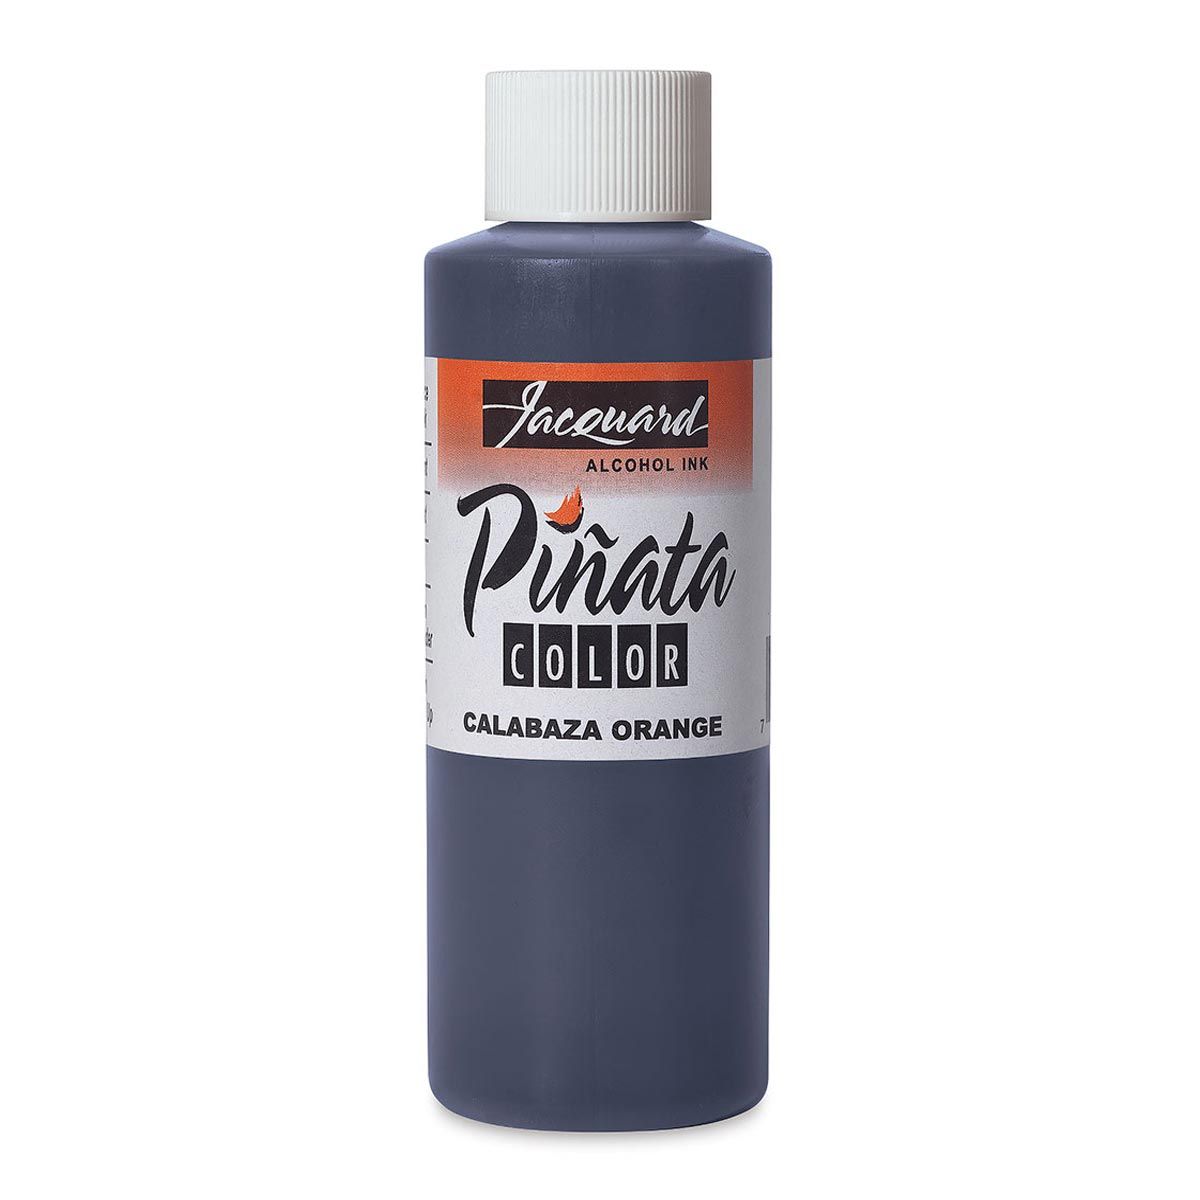 Piñata Color Alcohol Ink - Calabaza Orange 4-ounce